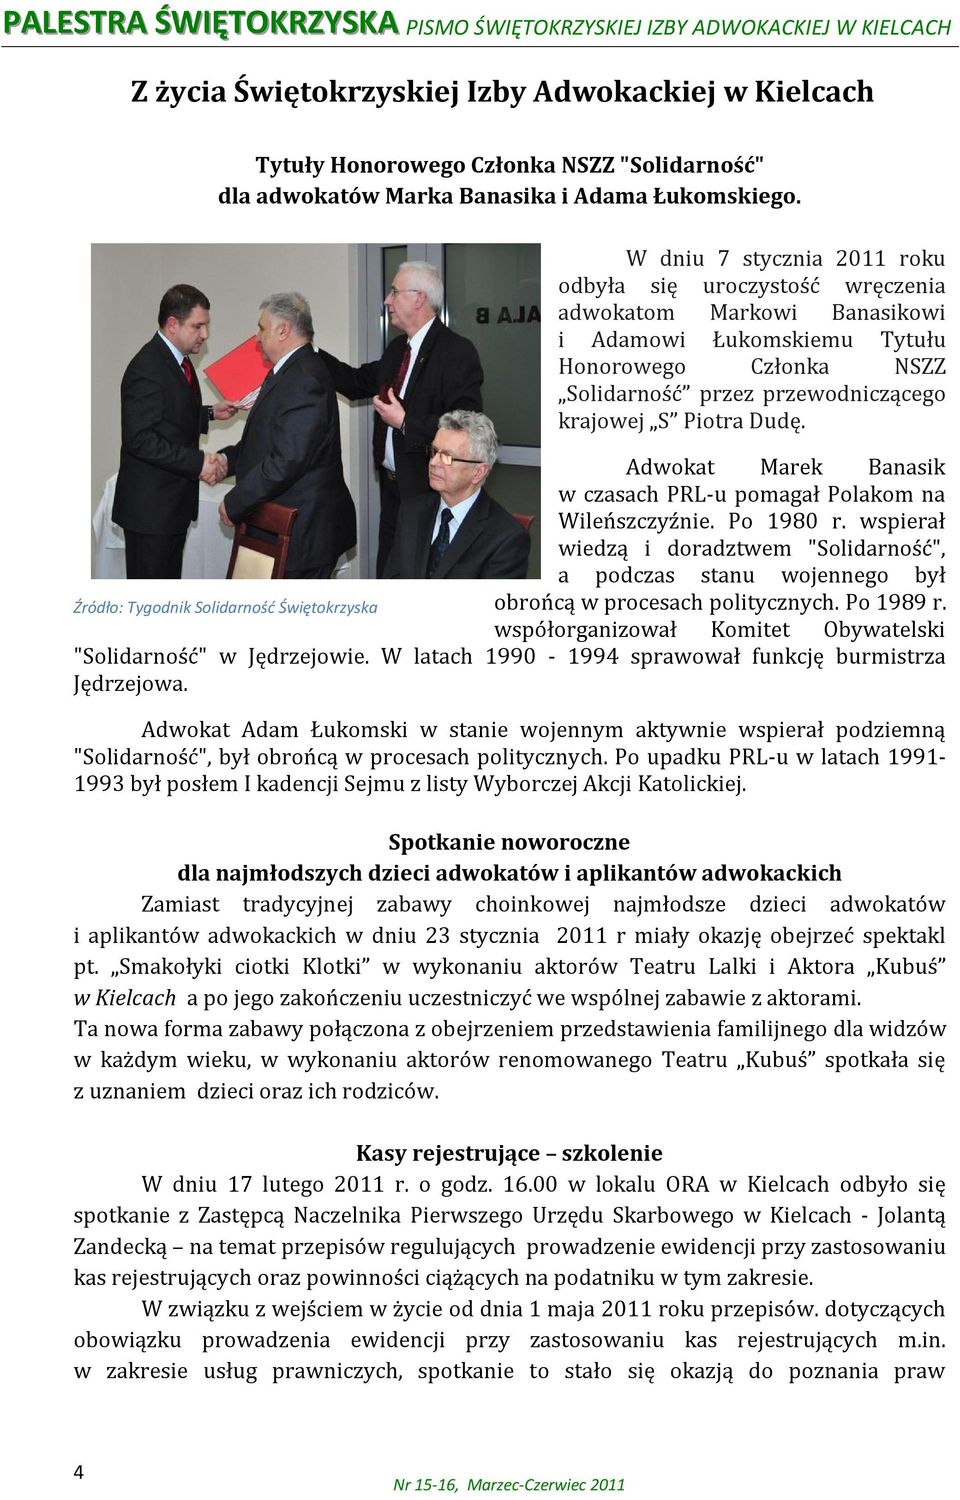 Dudę. Adwokat Marek Banasik w czasach PRL-u pomagał Polakom na Wileńszczyźnie. Po 1980 r.